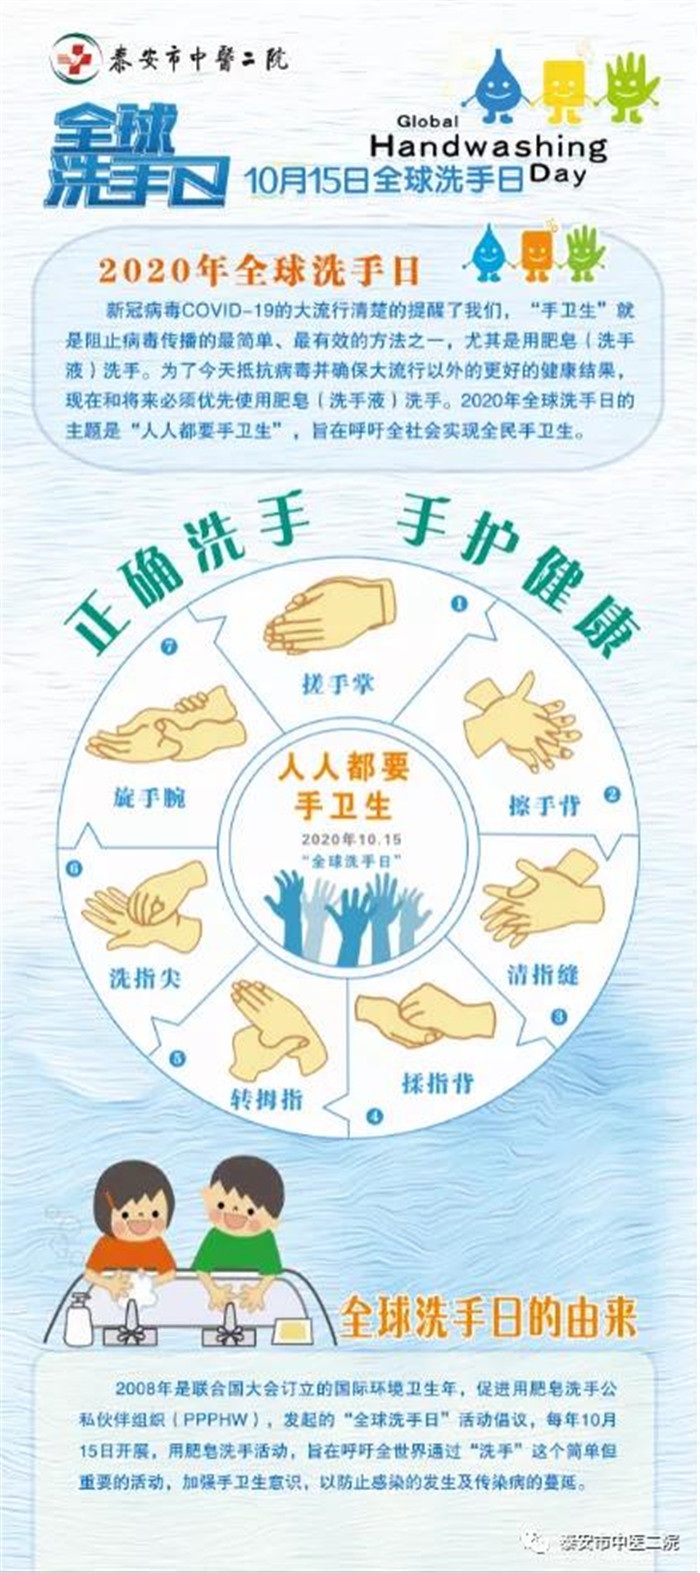 泰安市中医二院院感科组织开展"全球洗手日"宣传活动